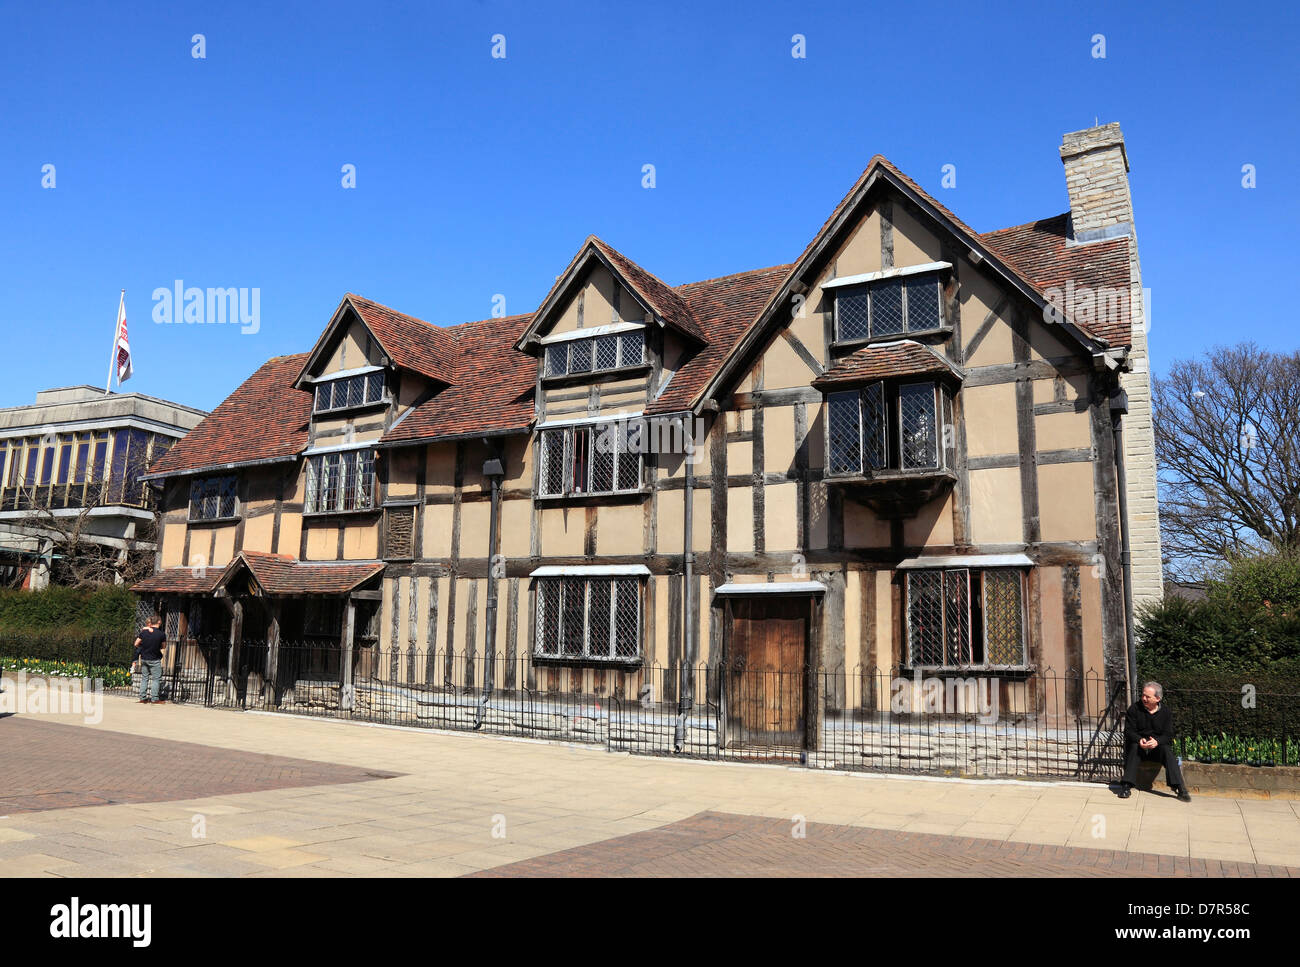 Le lieu de naissance de Shakespeare à Stratford sur Avon Angleterre Banque D'Images